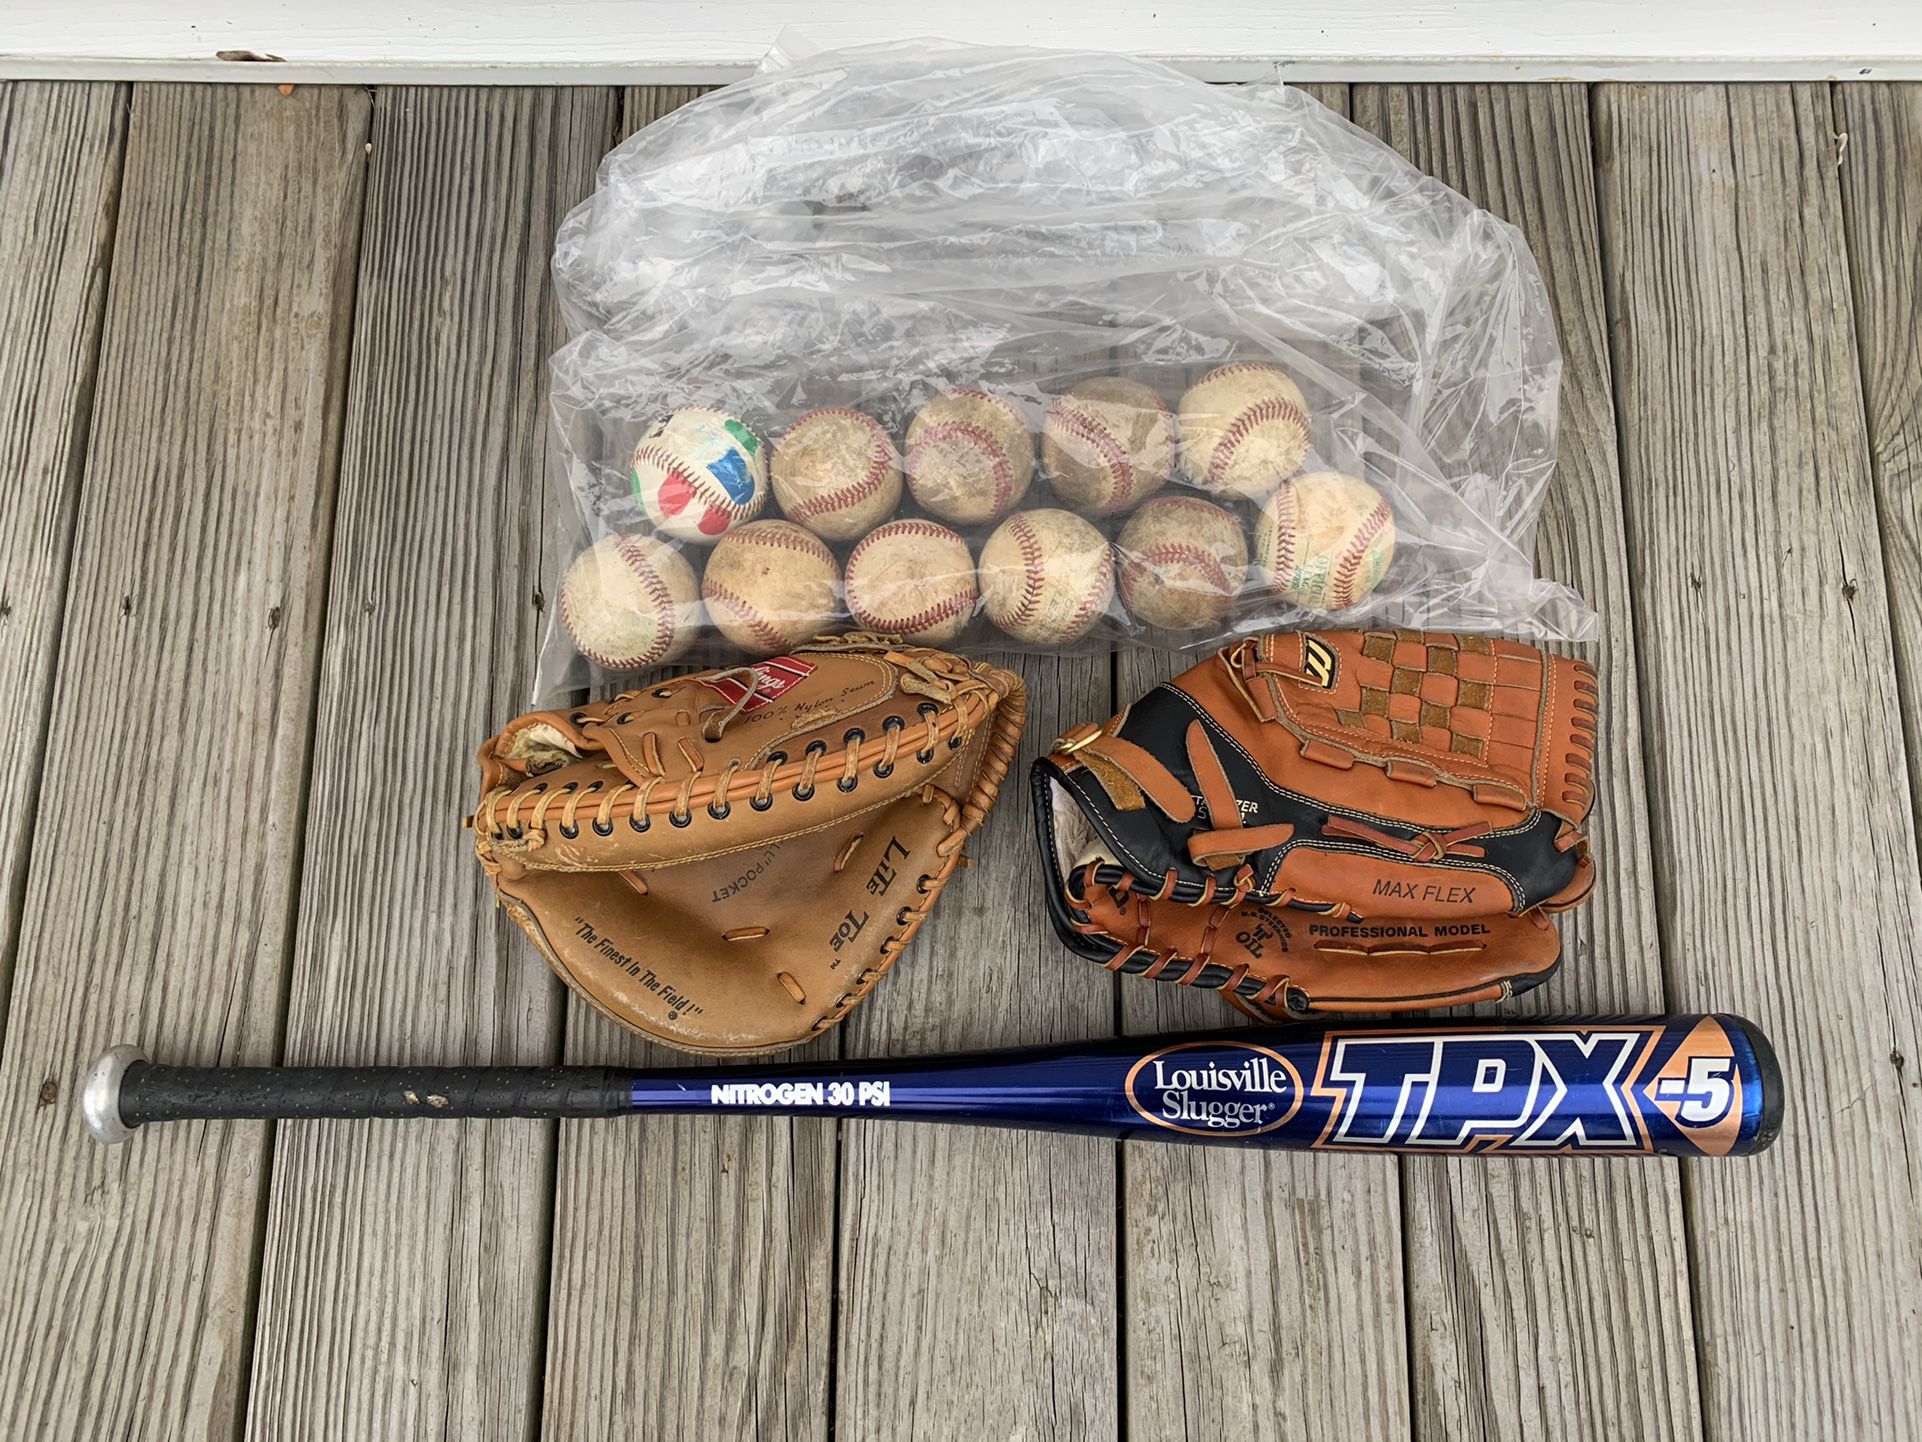 Baseball Bat, Gloves And Balls